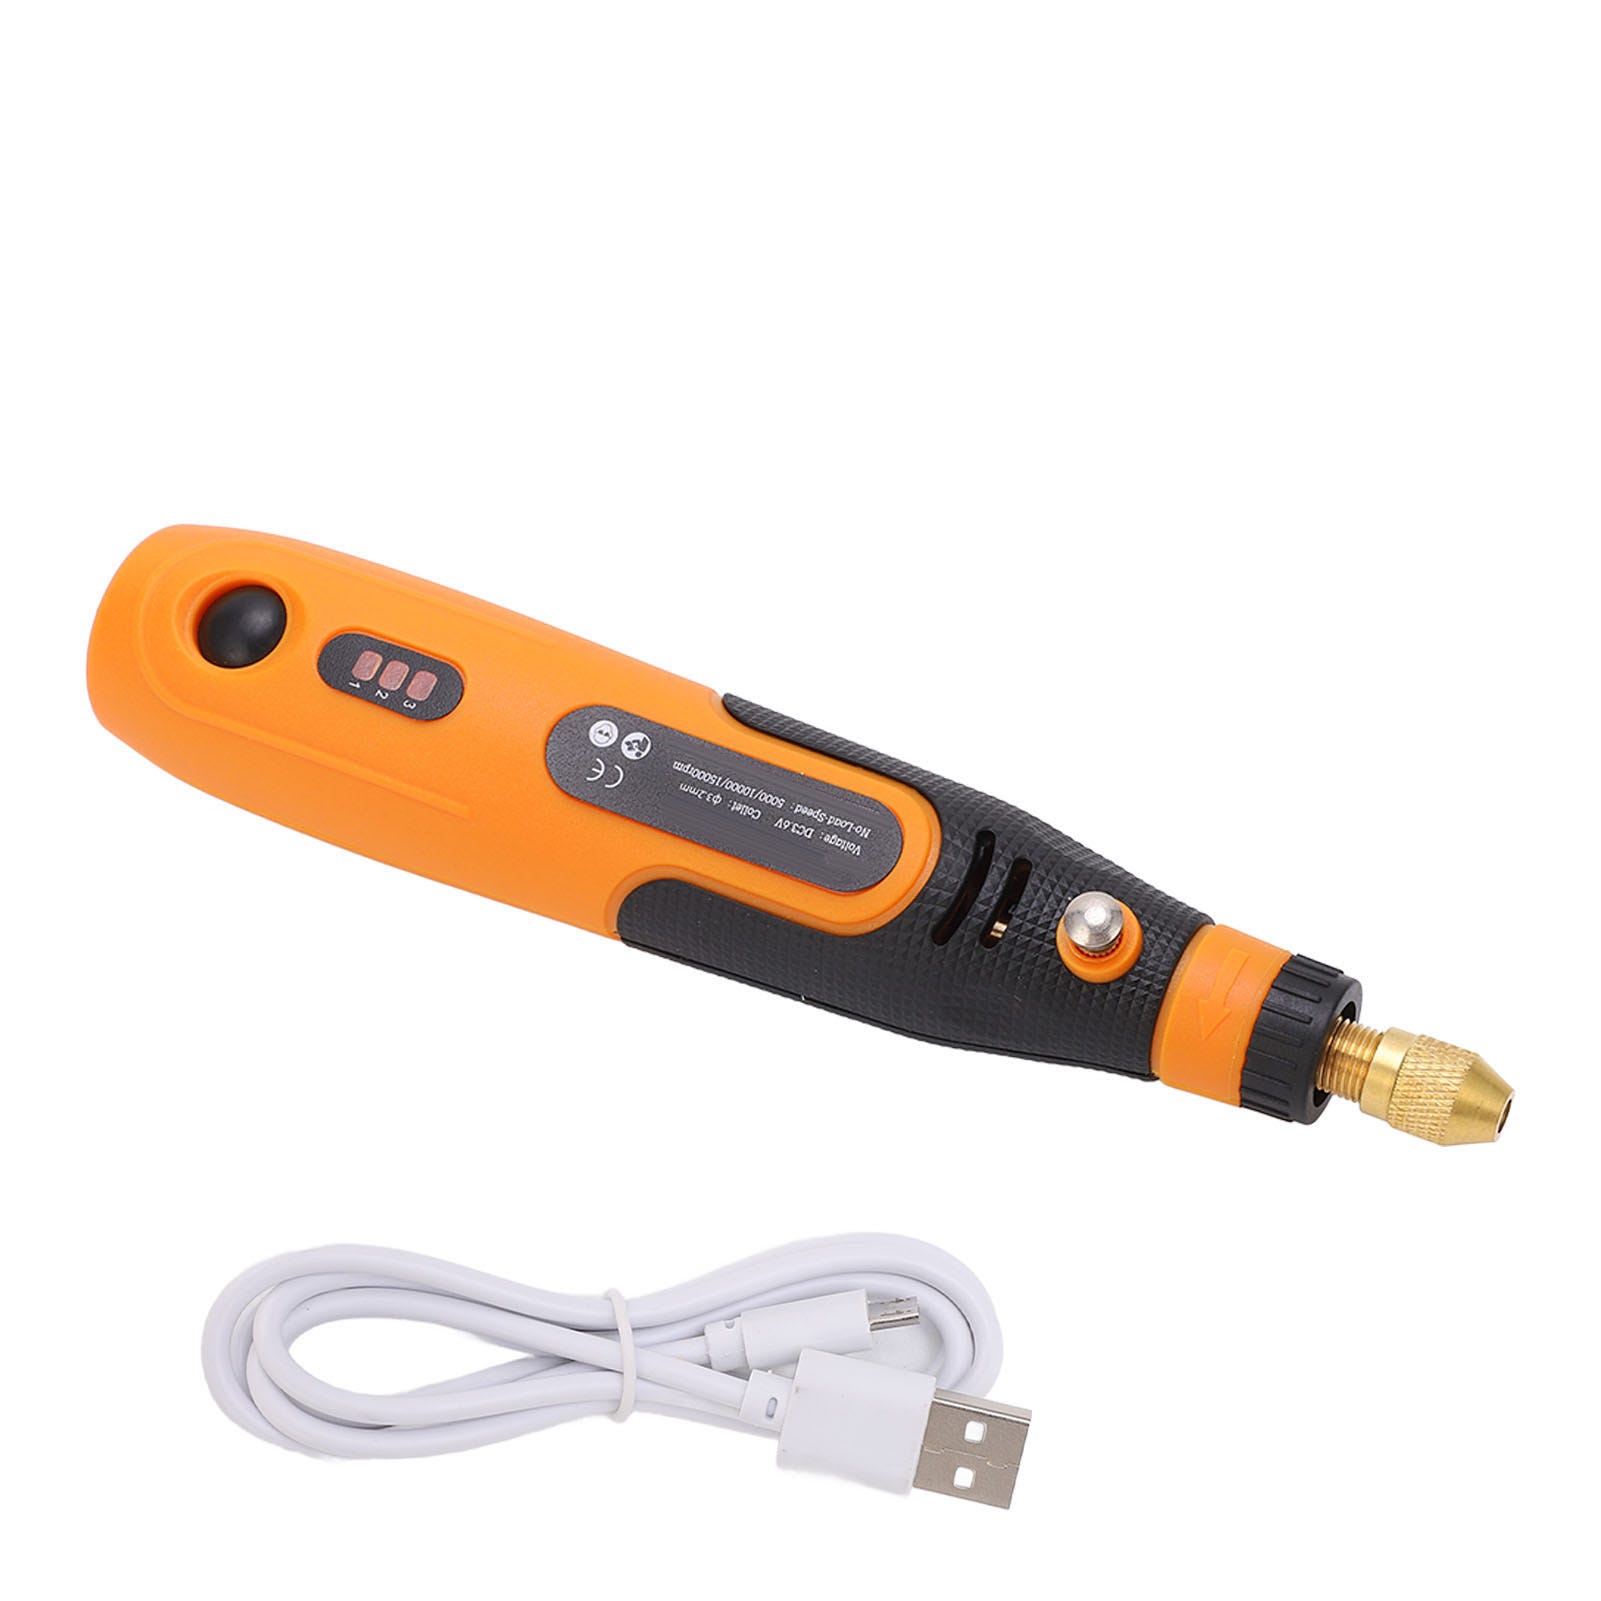 Penna per incisore elettrica senza fili, ricaricabile tramite USB